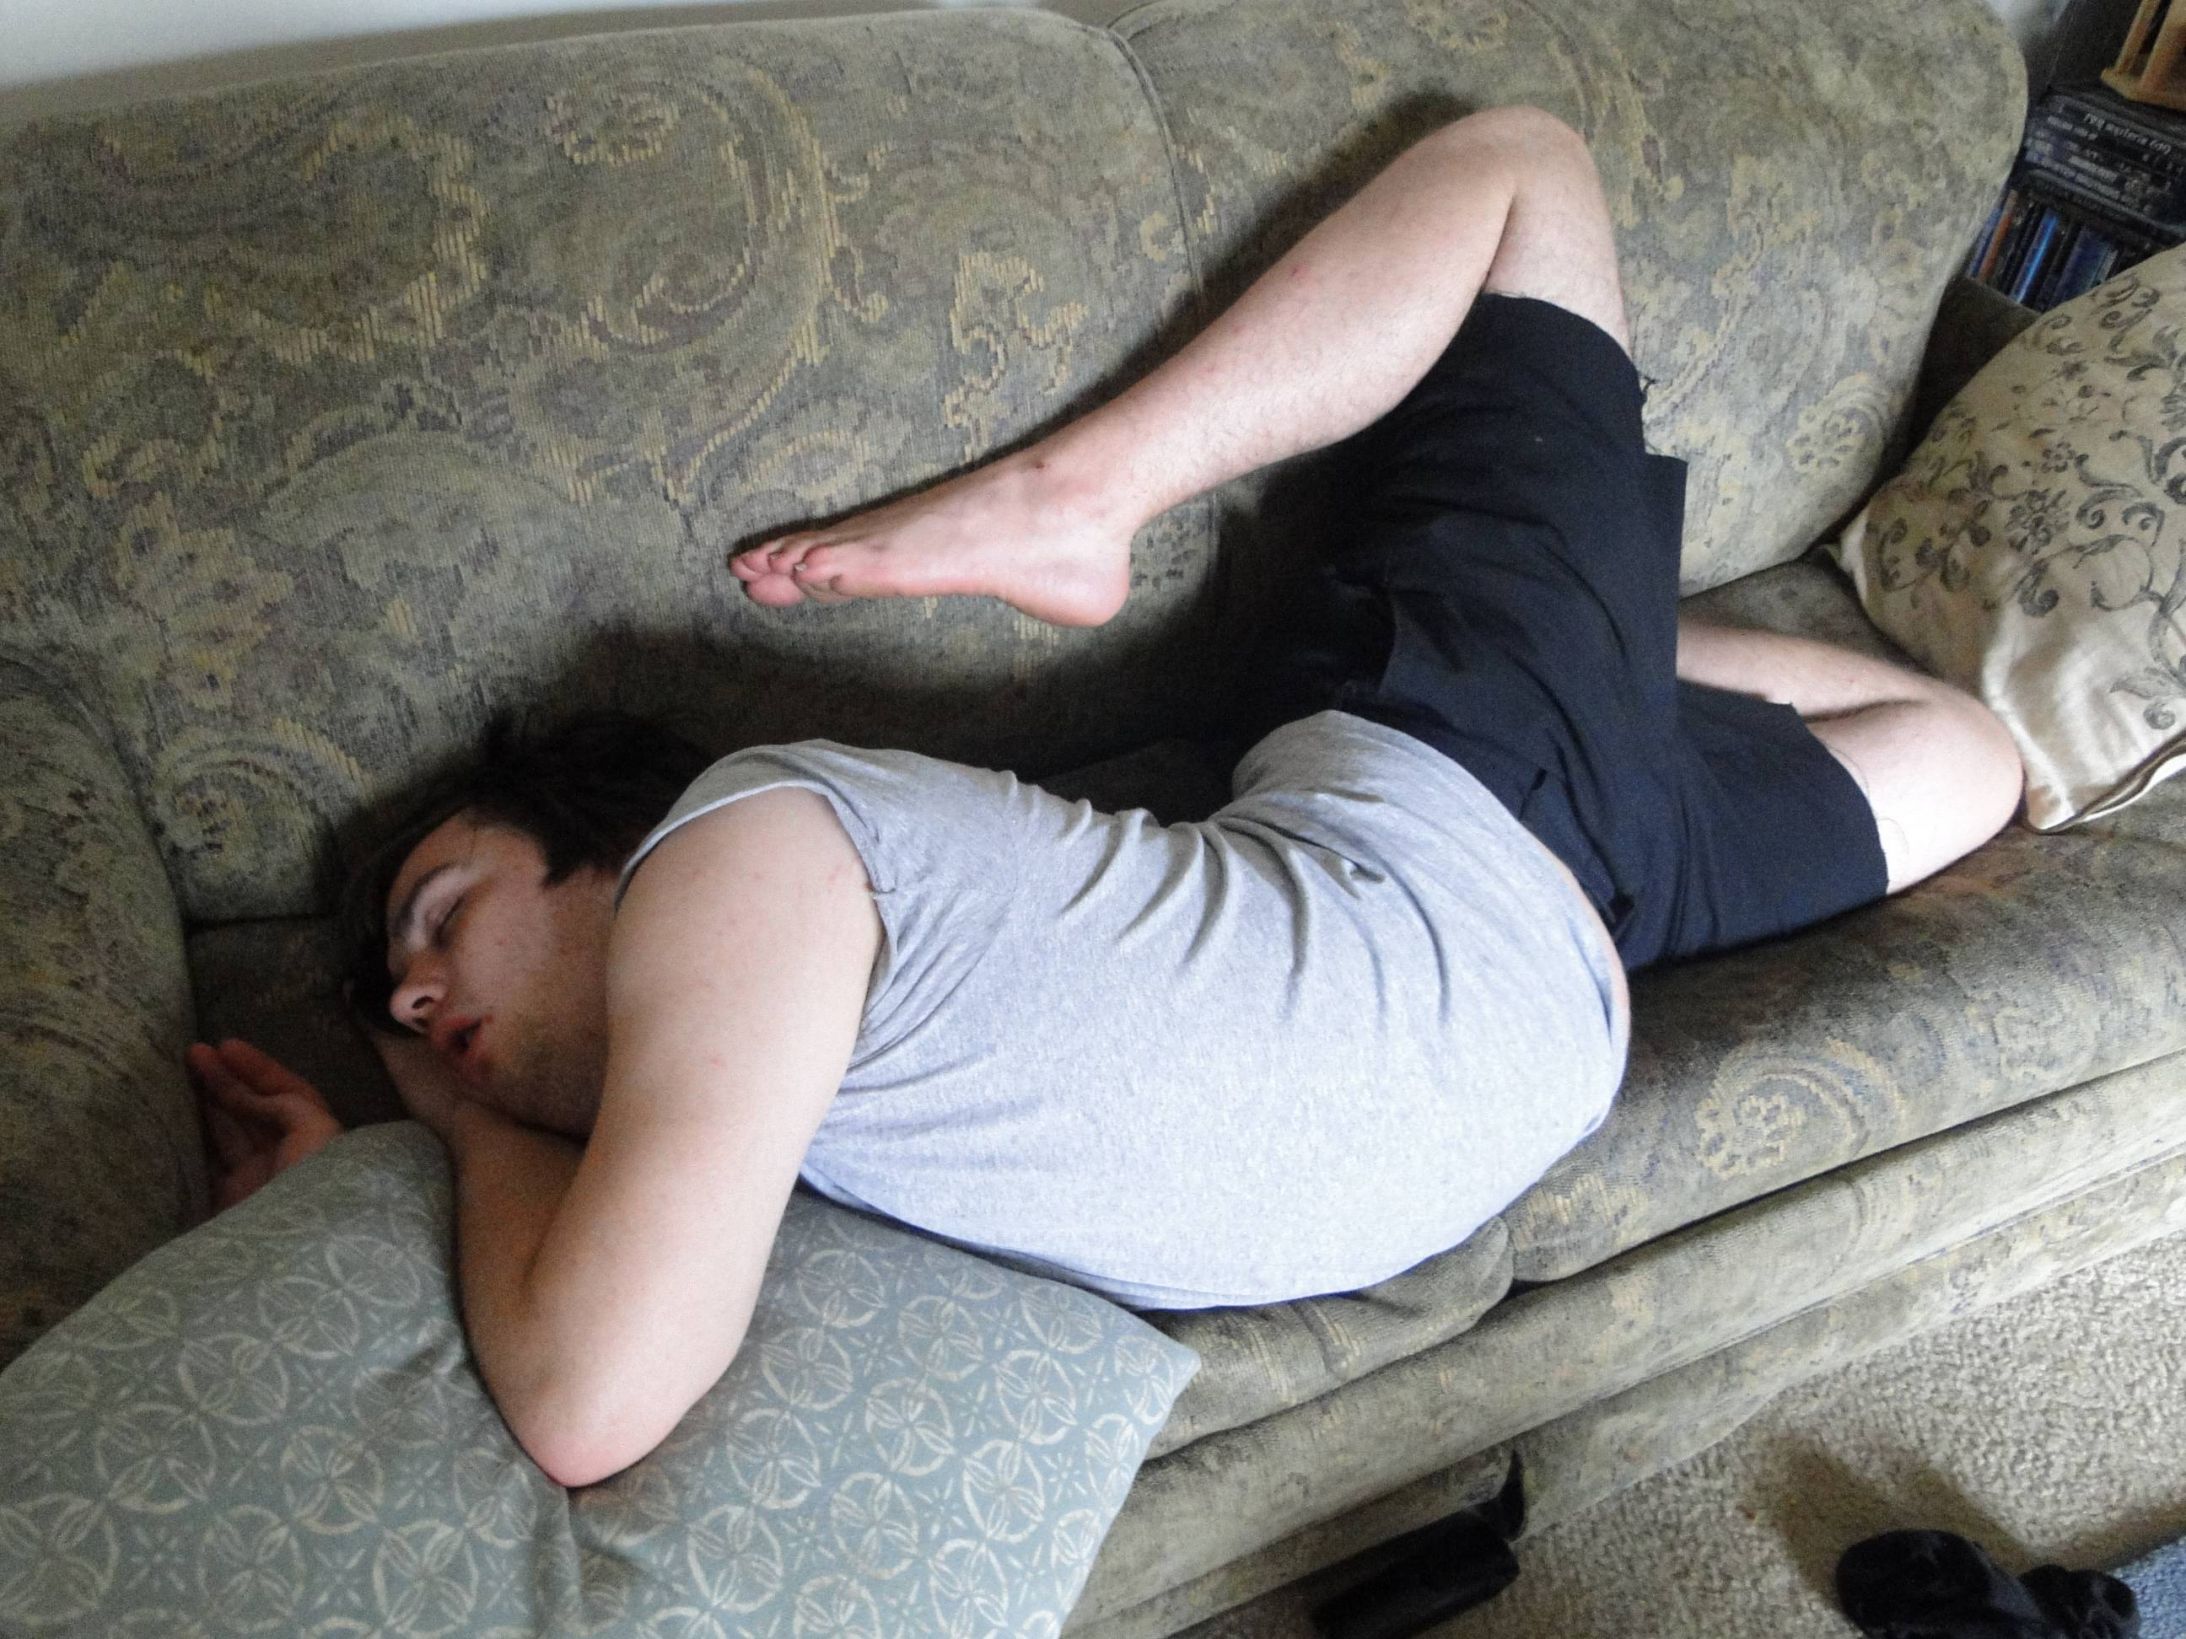 Пьяная жена друга спала без задних ног было сложно удержаться